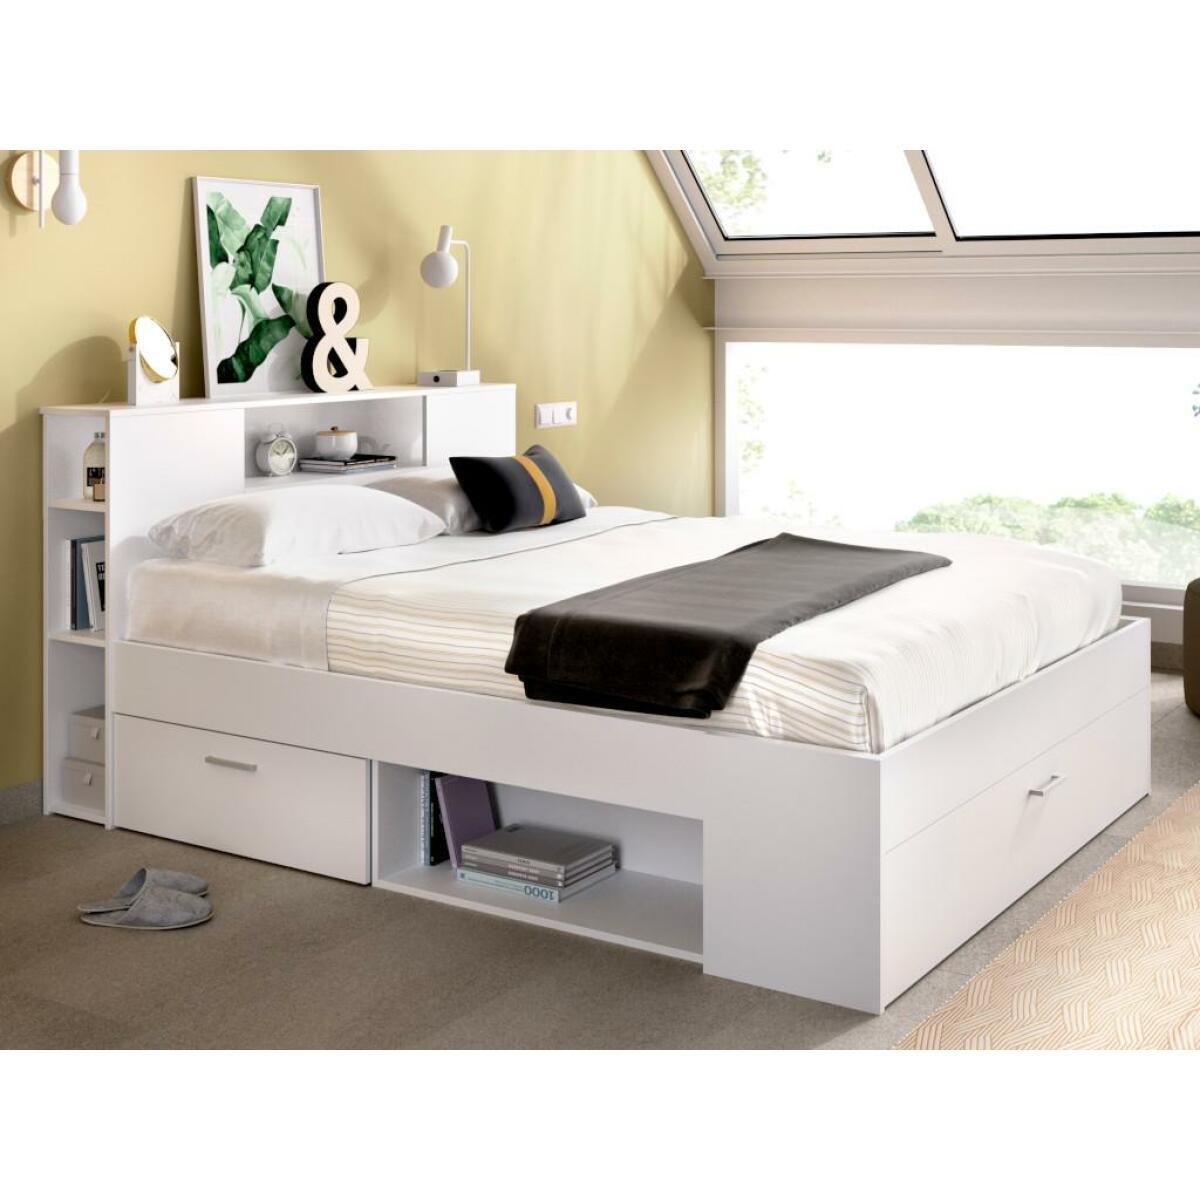 Ensembles de literie Vente-Unique Lit avec tête de lit rangements et tiroirs - 140 x 190 cm - Coloris : Blanc - LEANDRE